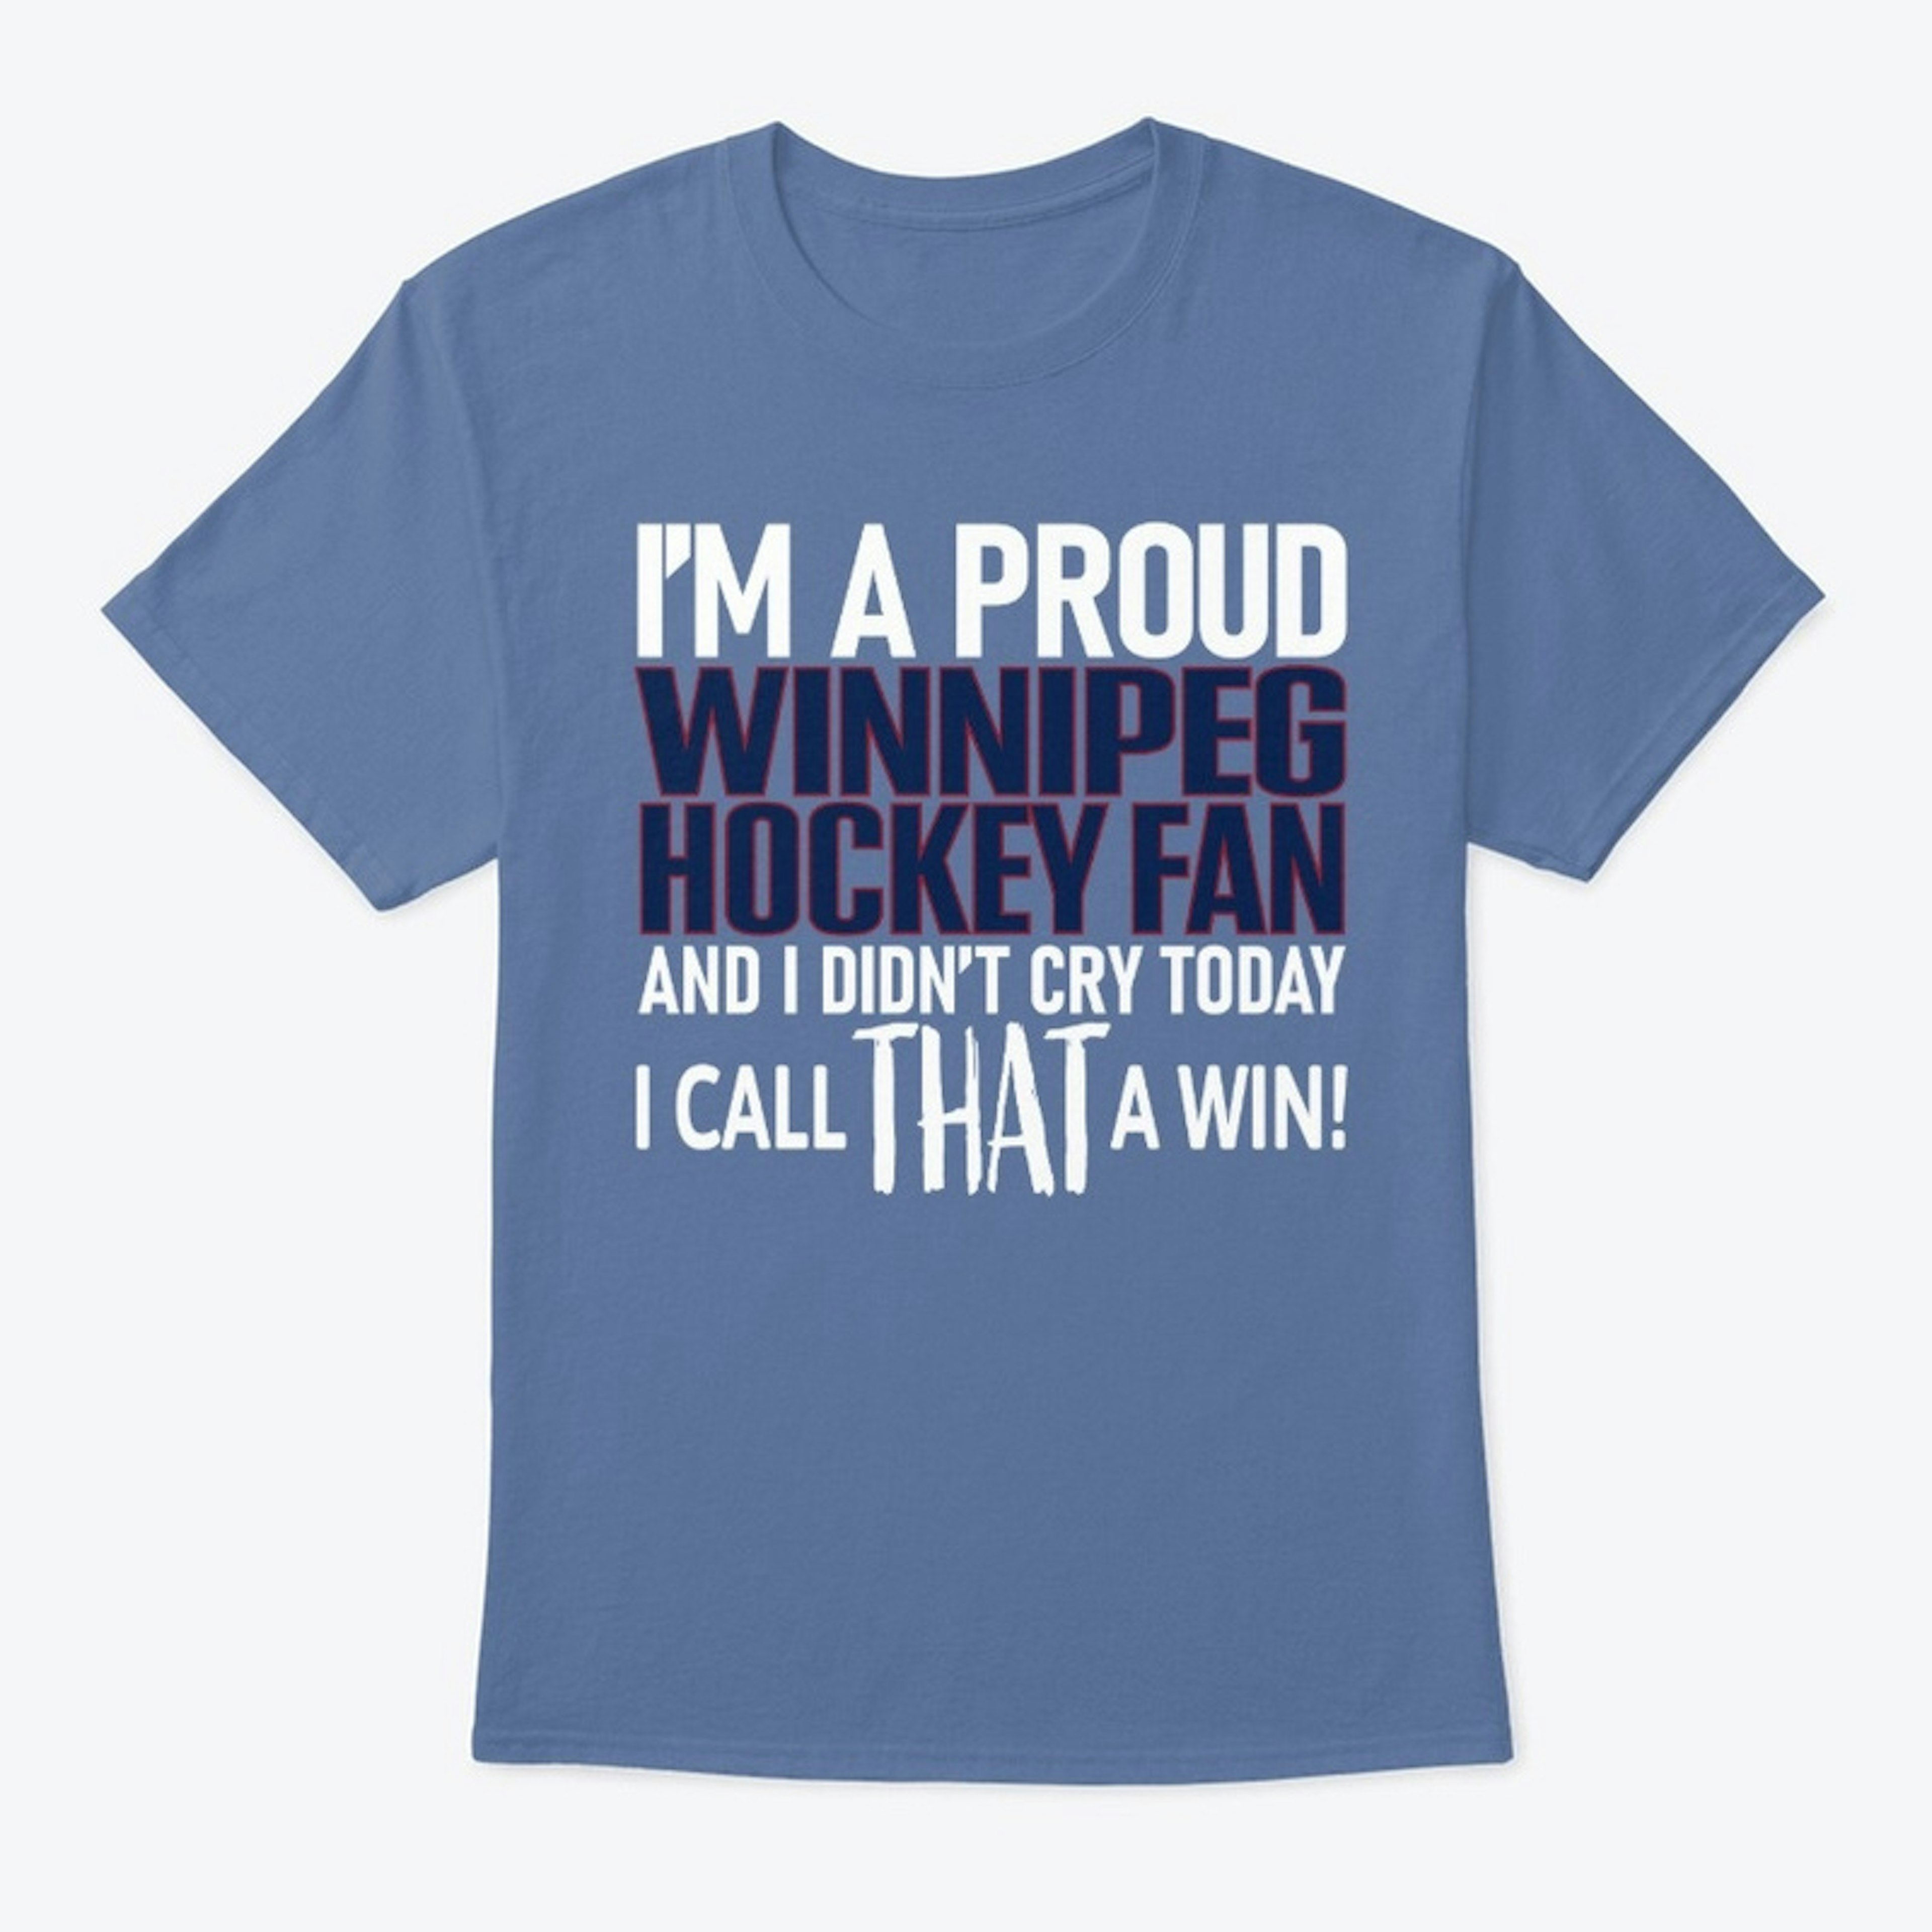 Proud Winnipeg Hockey Fan Didn't Cry